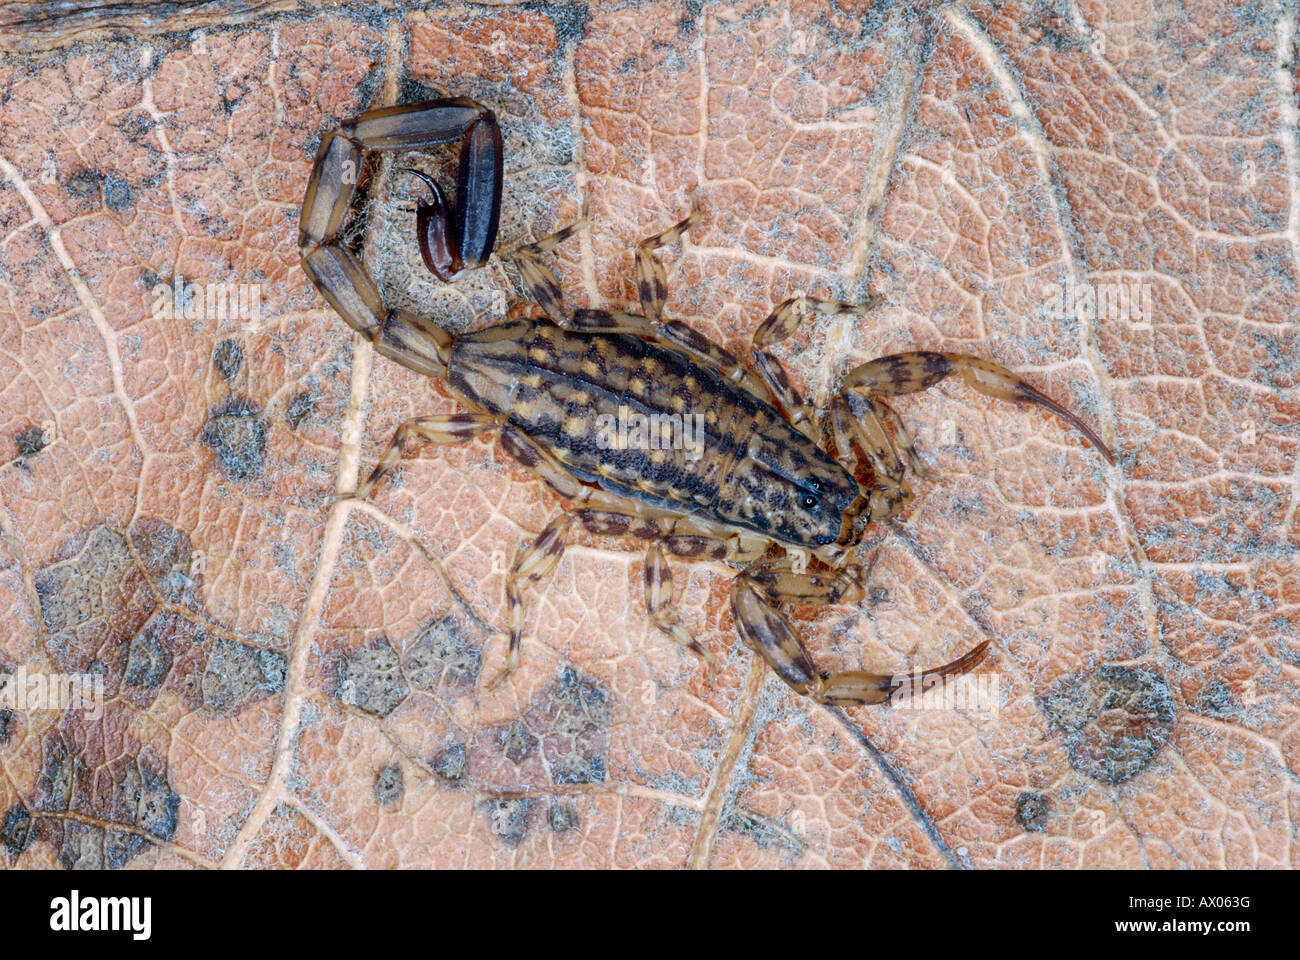 Mesobuthus tamulus, Scorpionidae, Scorpionida, Arachnida, Lychas sp. marbled scorpion Stock Photo